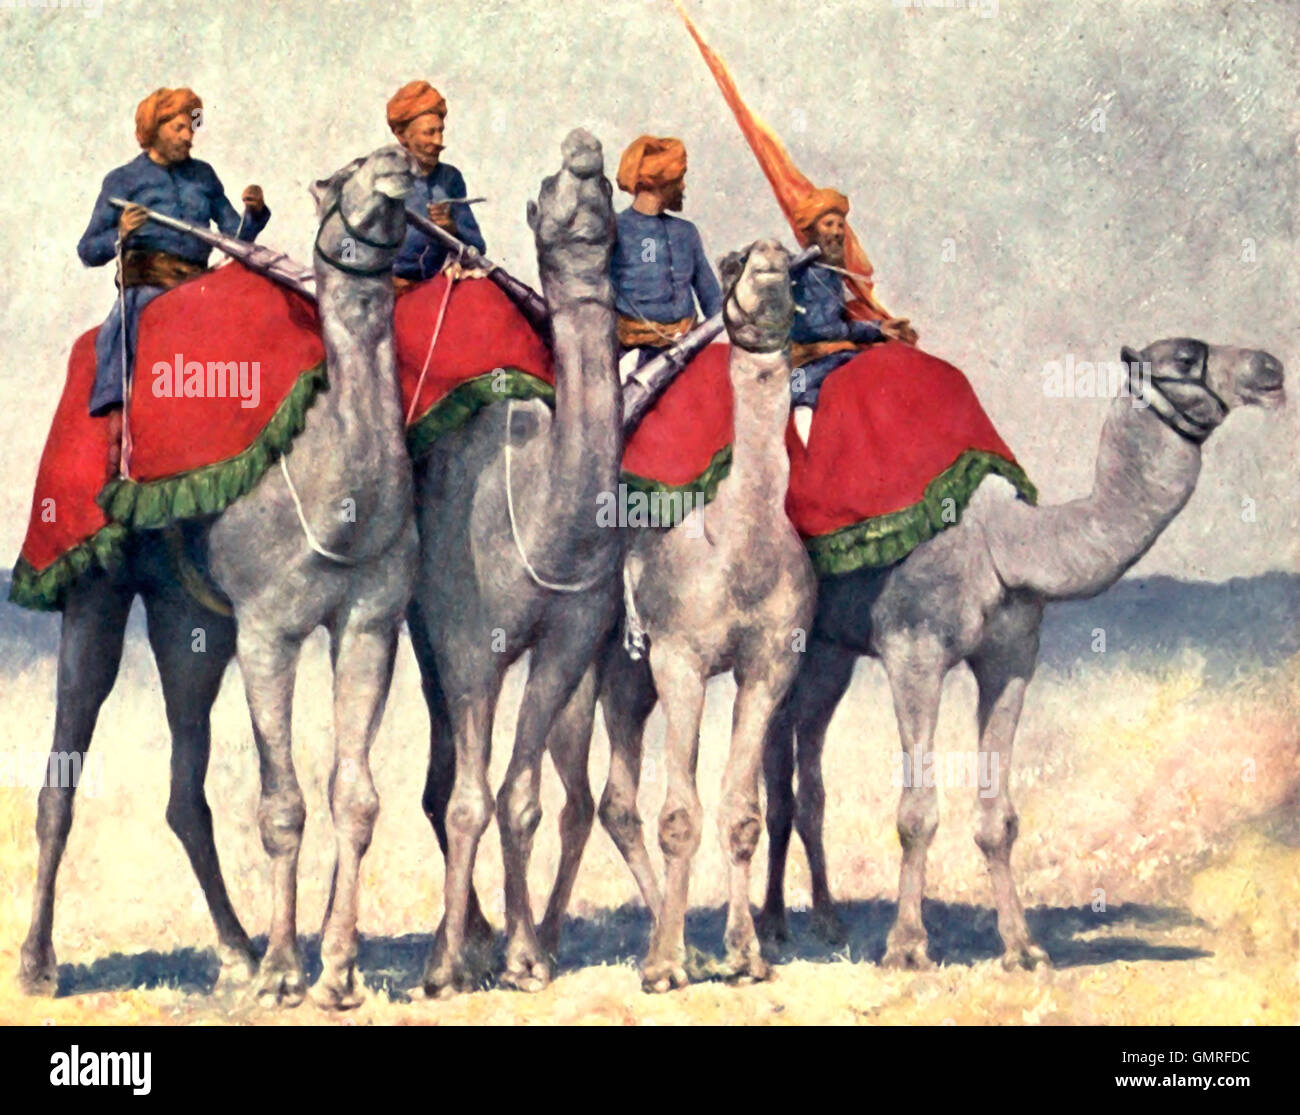 Camelry von Alwar - tragen sie die alten schwenkbaren Kanonen - hell poliert Metall Waffen - die Leuchten so hell, dass man sie aus großer Entfernung sehen kann. Indien, ca. 1902 Stockfoto